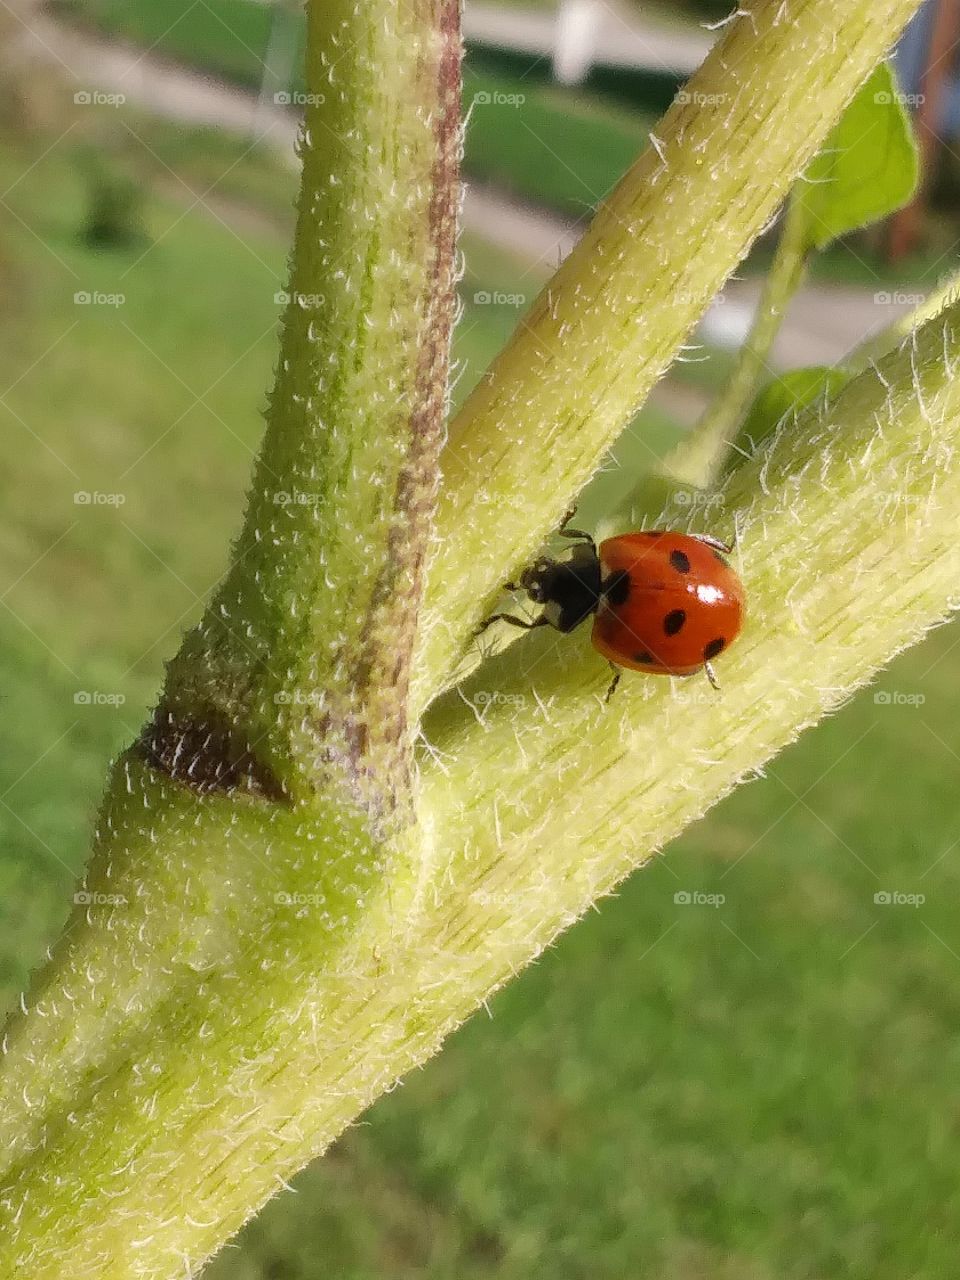 Climbing Ladybug